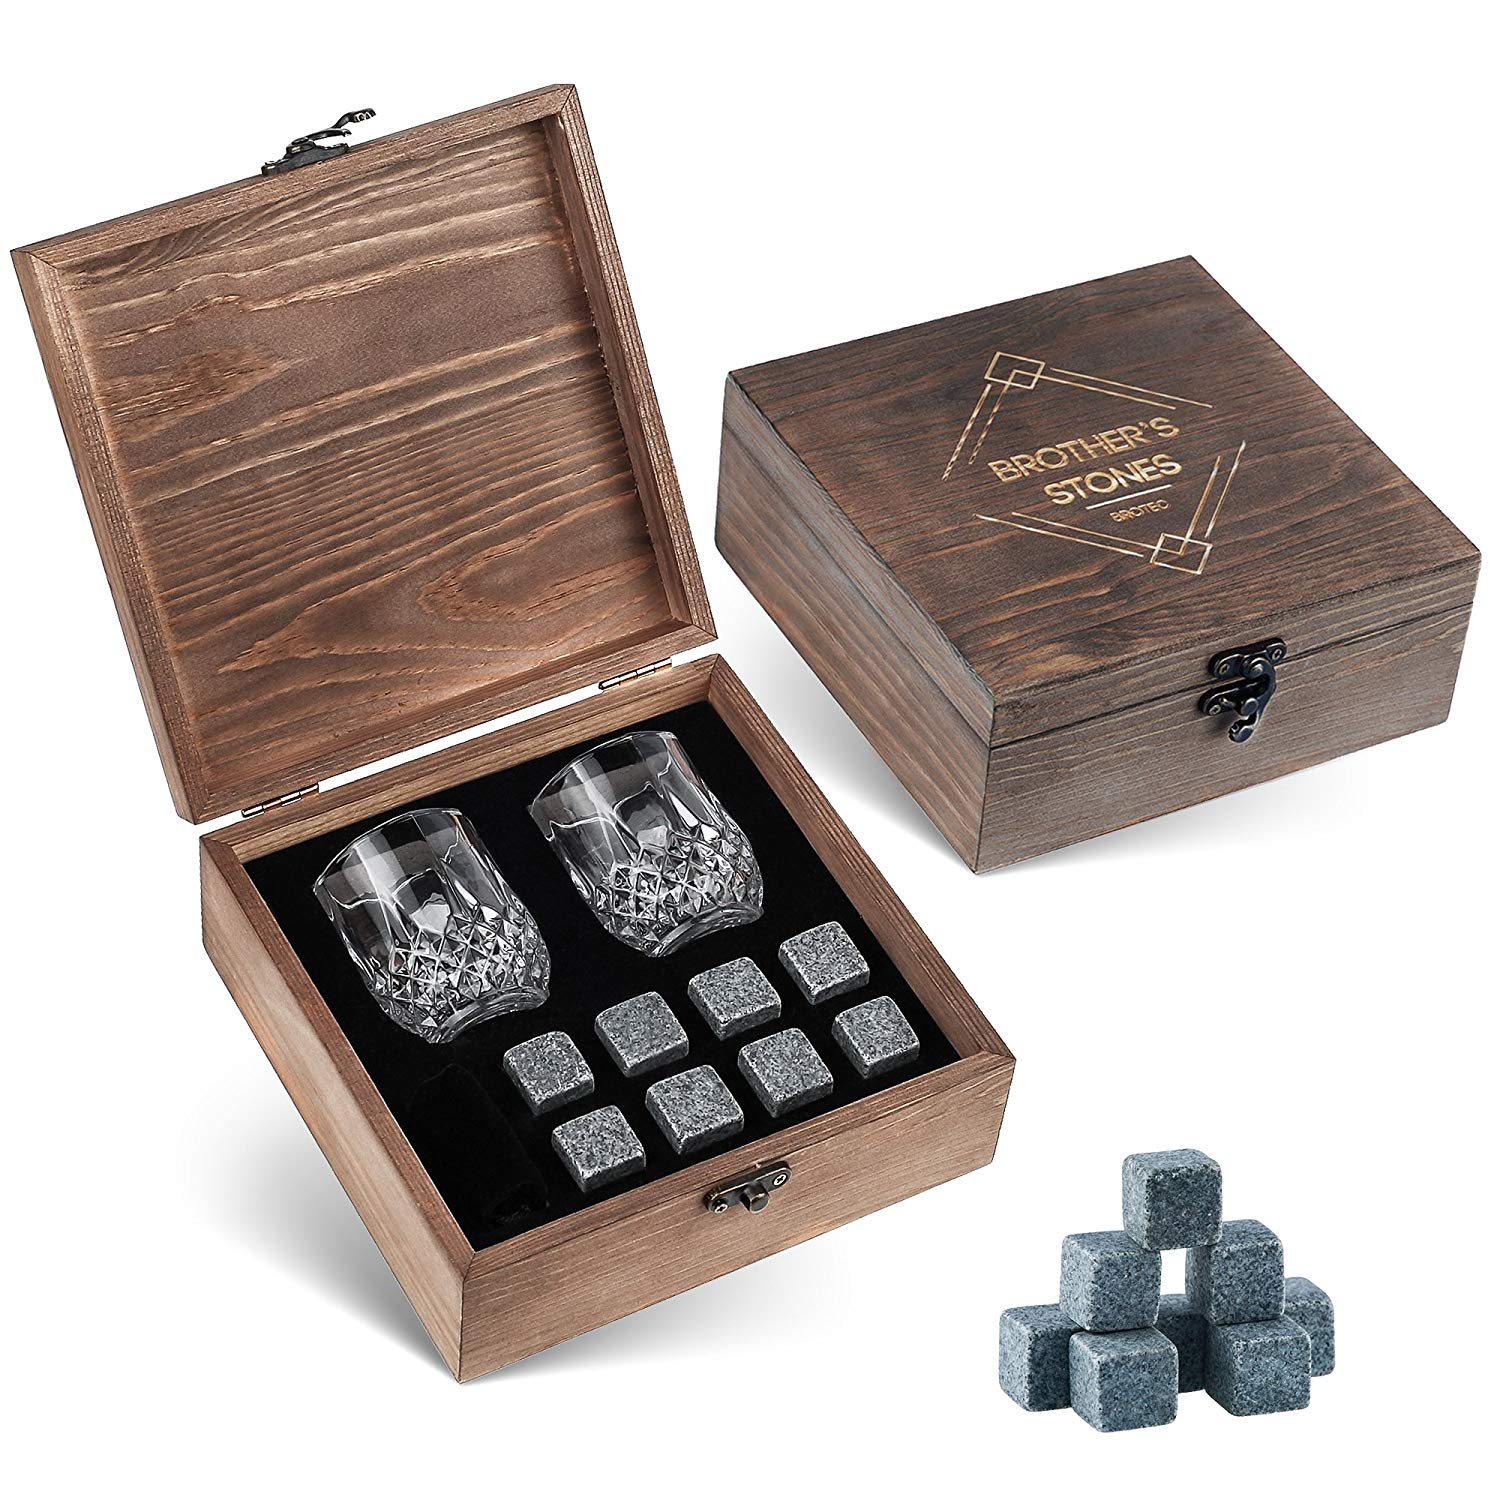 Gartendeko Hochzeit Best Of Whiskey Steine Geschenk Set – 8 Granit Chillen Whisky Rocks